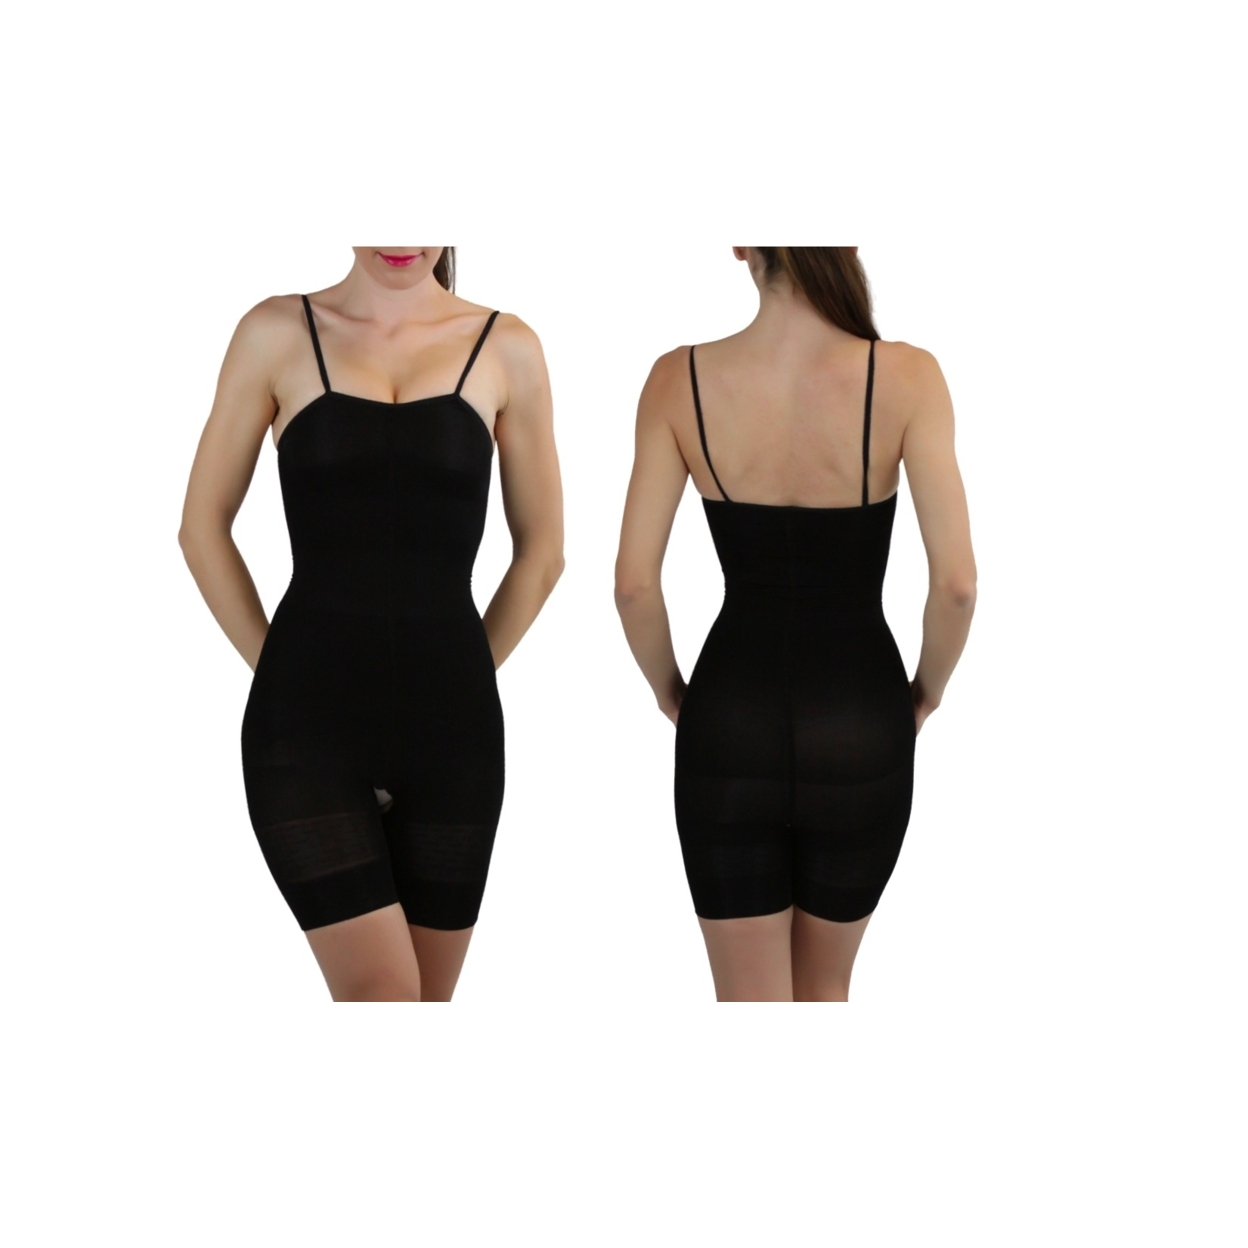 Women's Slimming Body Suit - Beige, XL